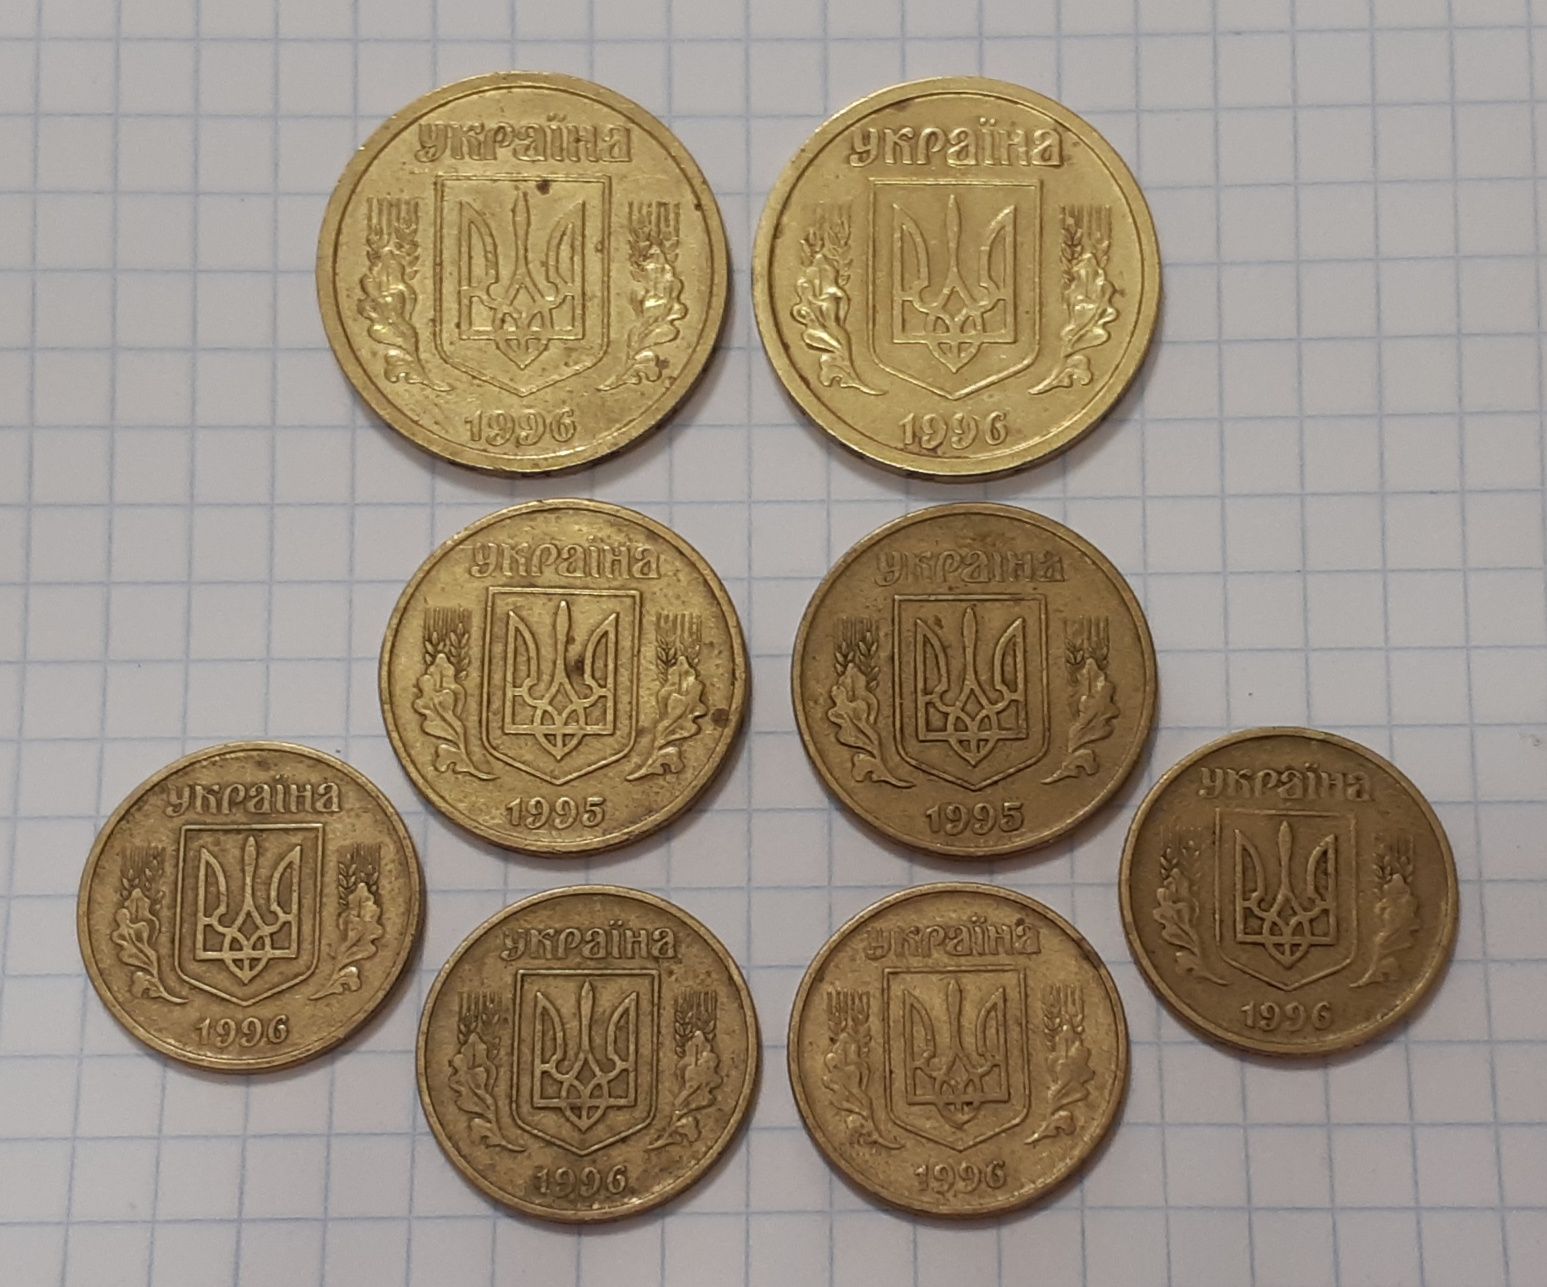 Набор монет: 1гр 96г - 2шт, 50коп 95г - 2шт, 25коп 96г - 4шт